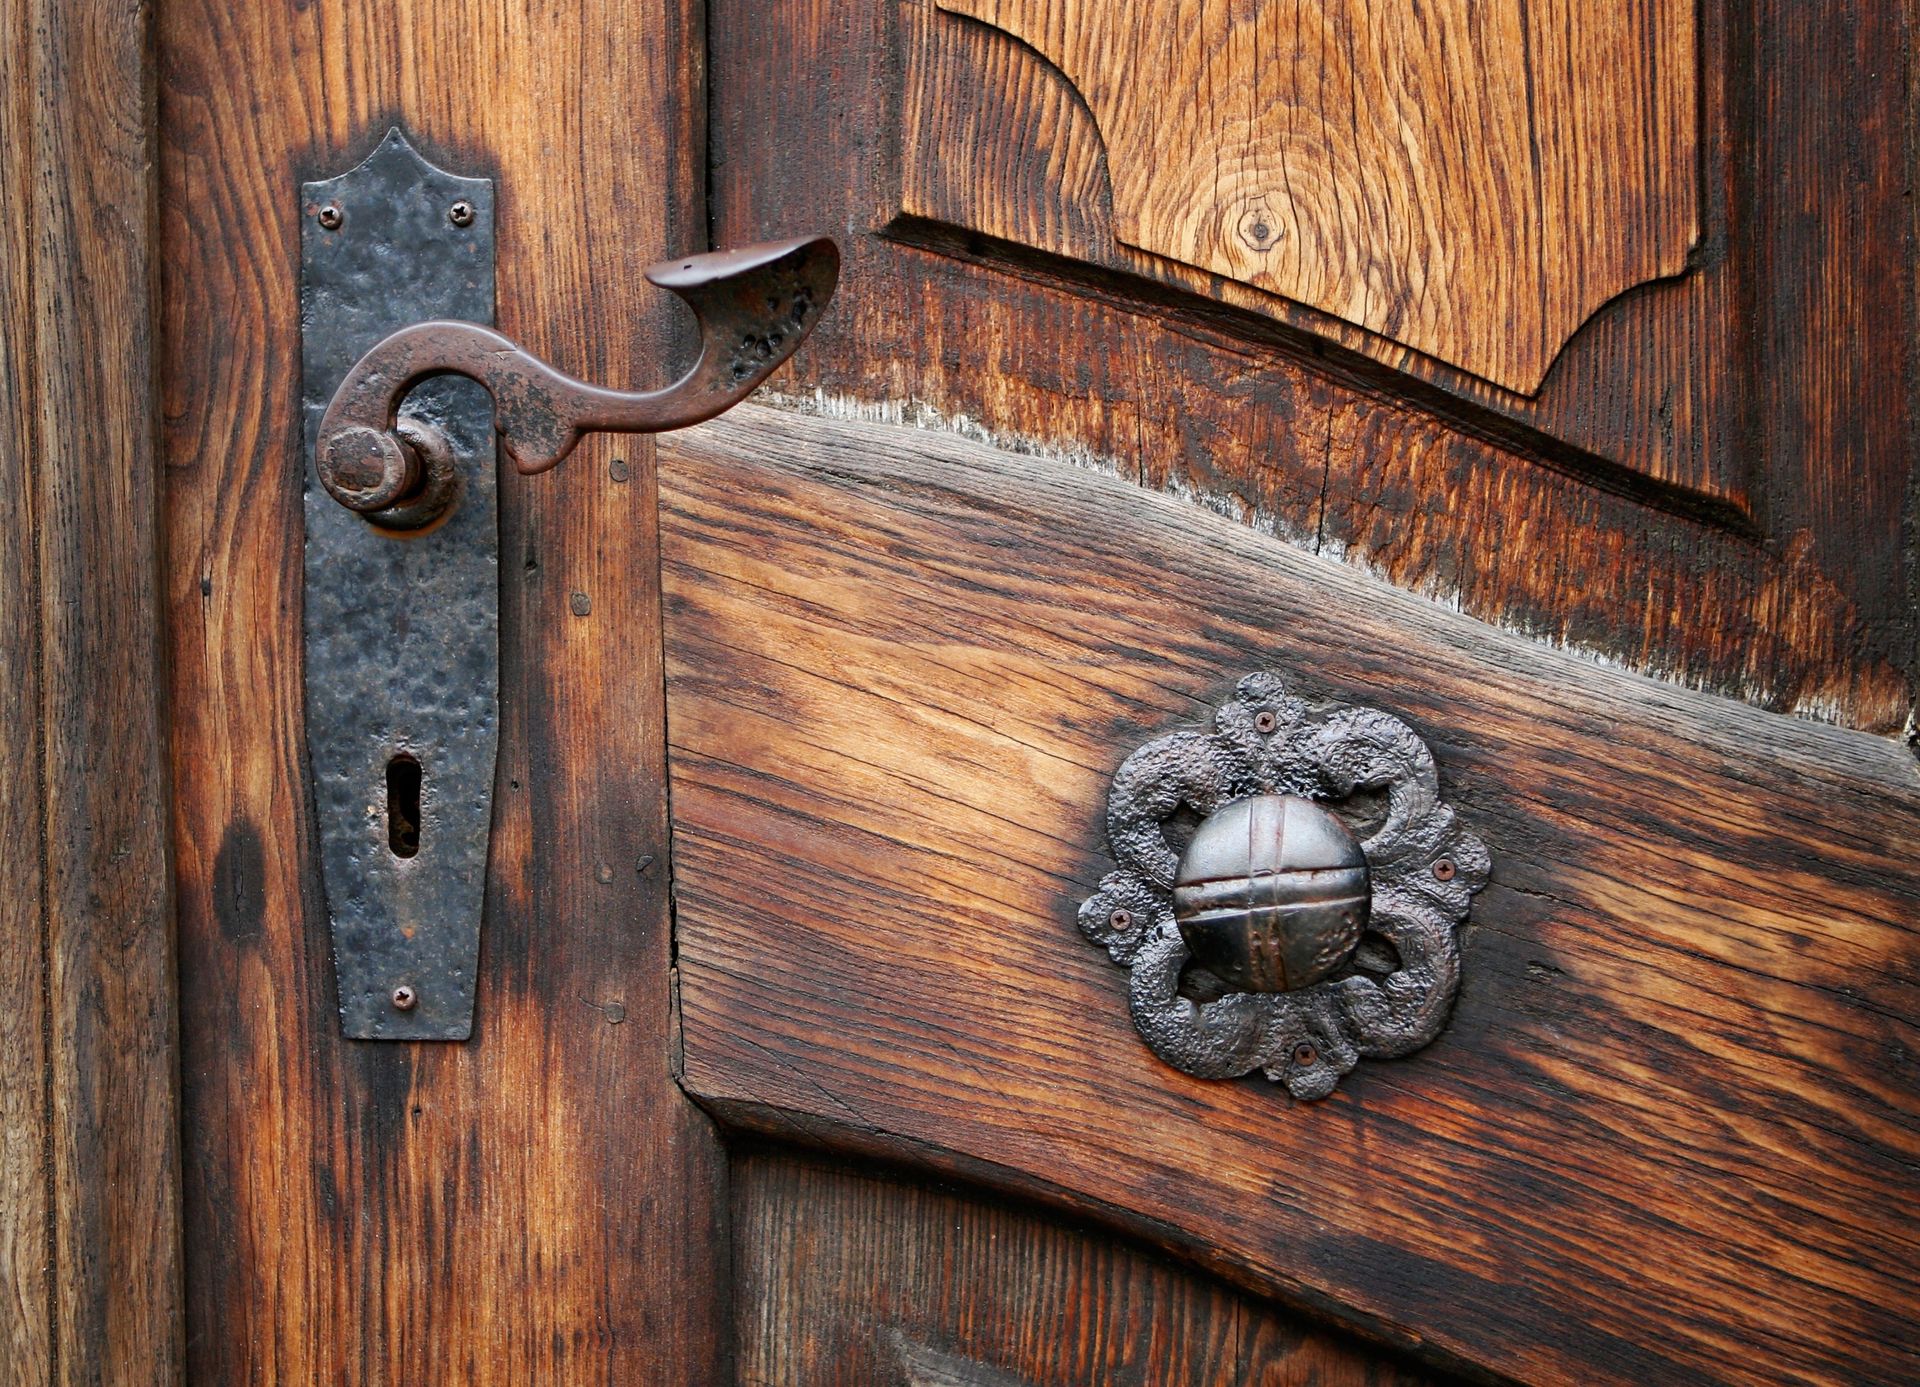 An antique door and metal doorknob.